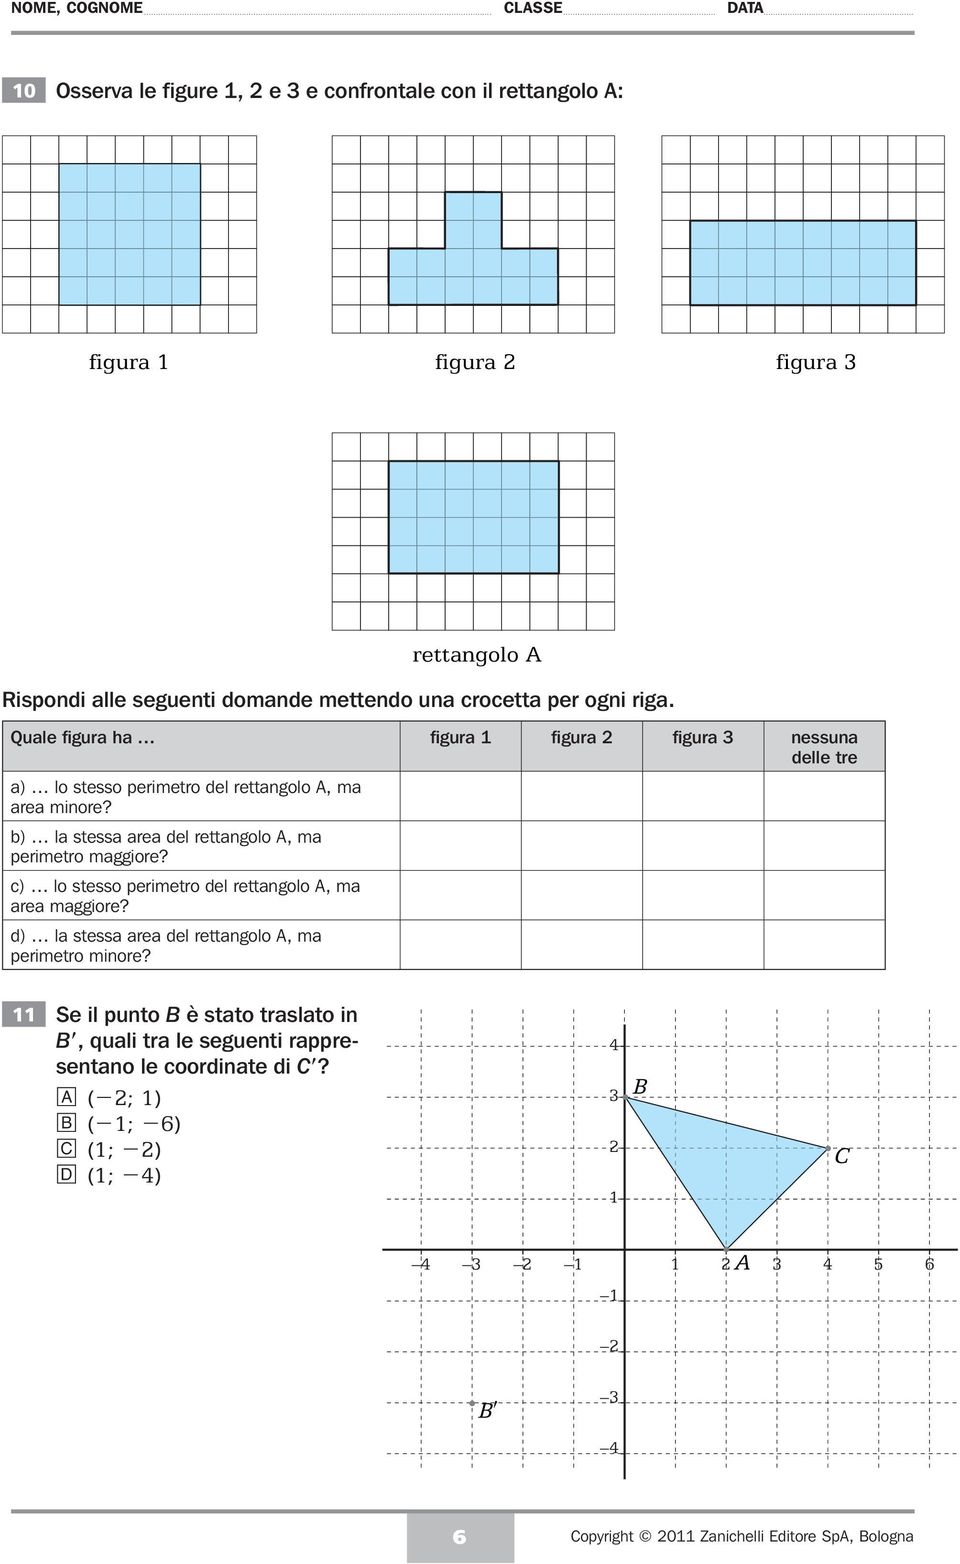 b) la stessa area del rettangolo A, ma perimetro maggiore? c) lo stesso perimetro del rettangolo A, ma area maggiore?